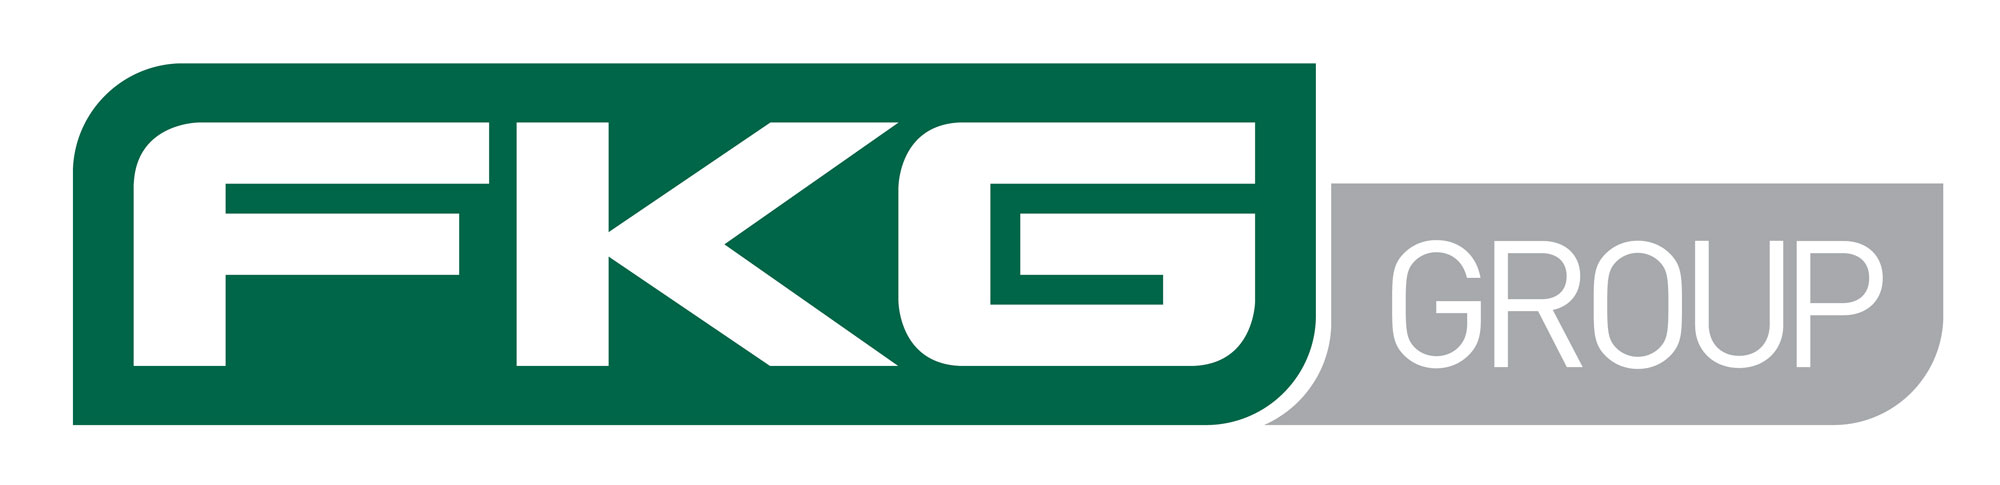 fkg-group